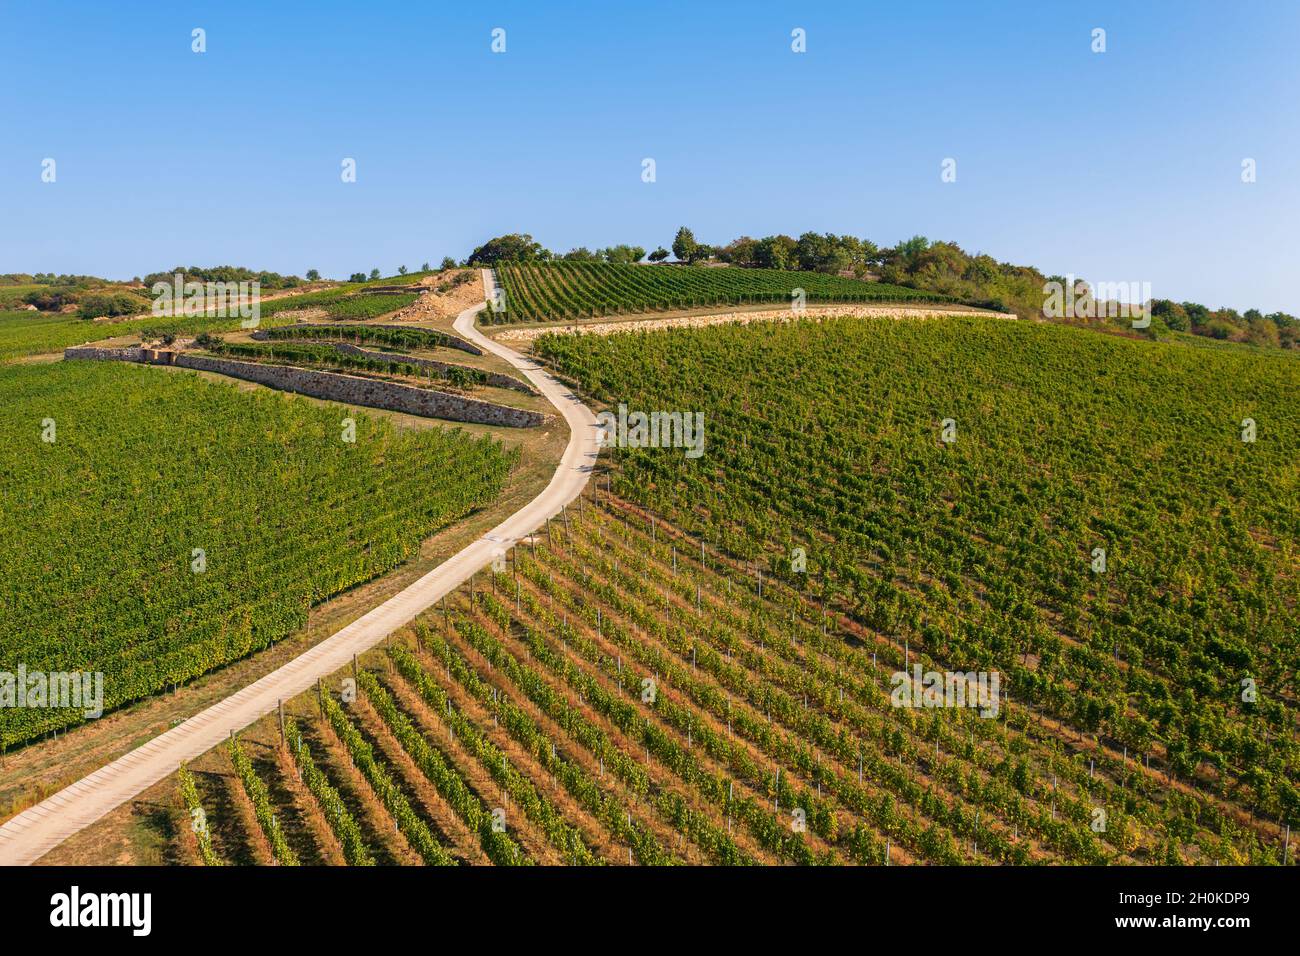 Vista panoramica sui bellissimi vigneti della regione vinicola di Tokaj, paesaggio culturale storico, parte del patrimonio mondiale dell'UNESCO Foto Stock